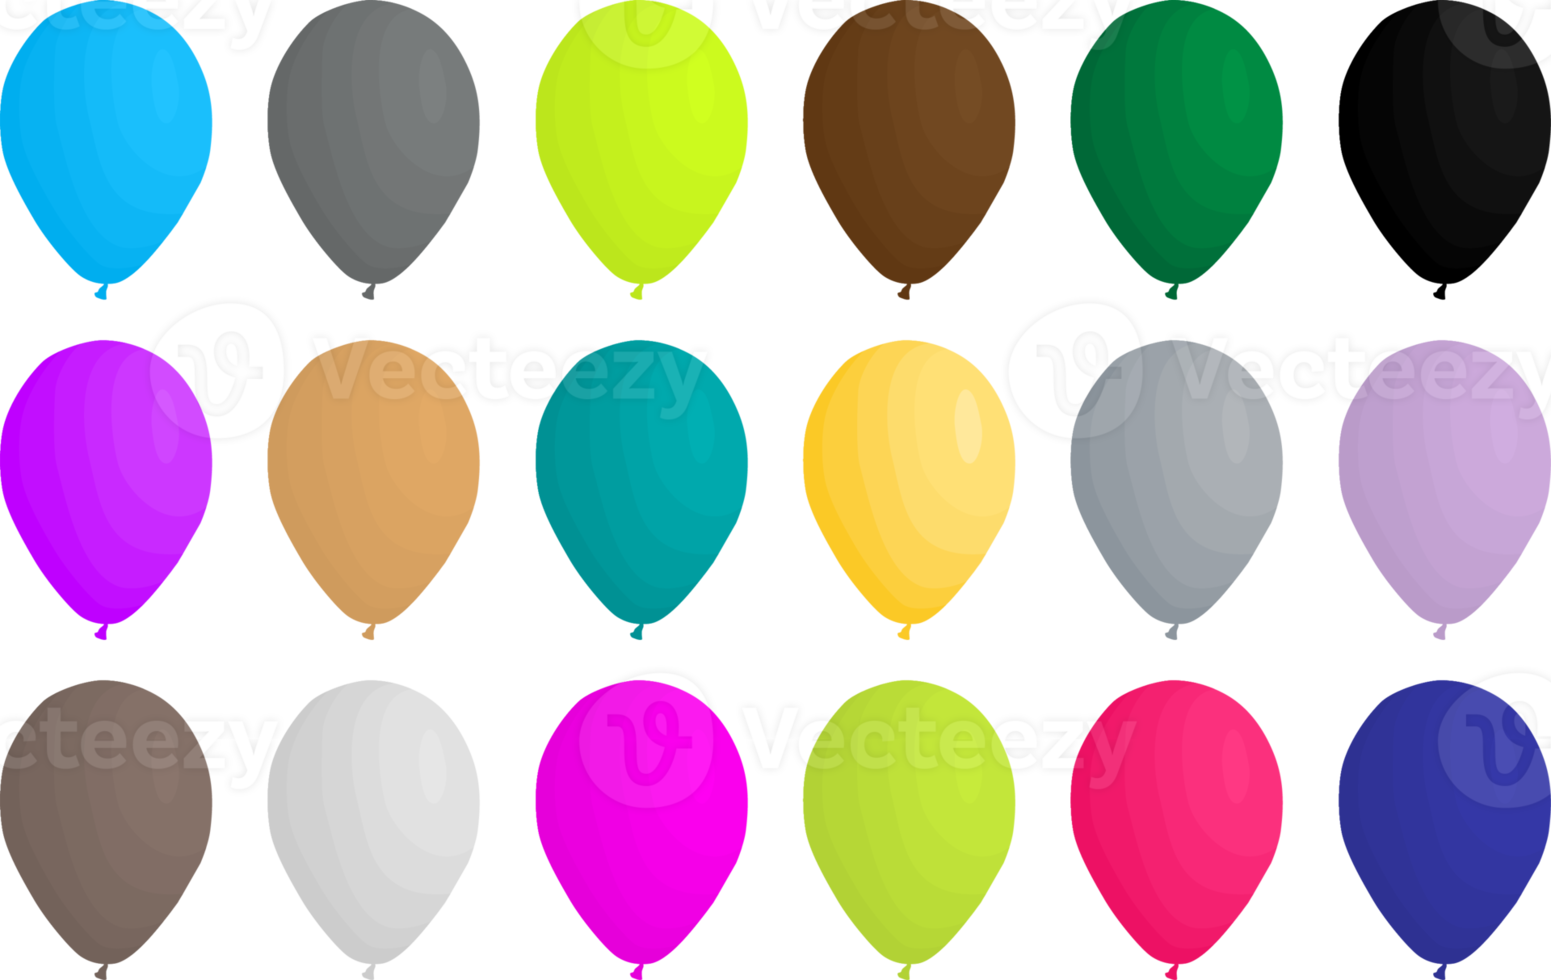 groot reeks verschillend types opblaasbaar rubber ballonnen png